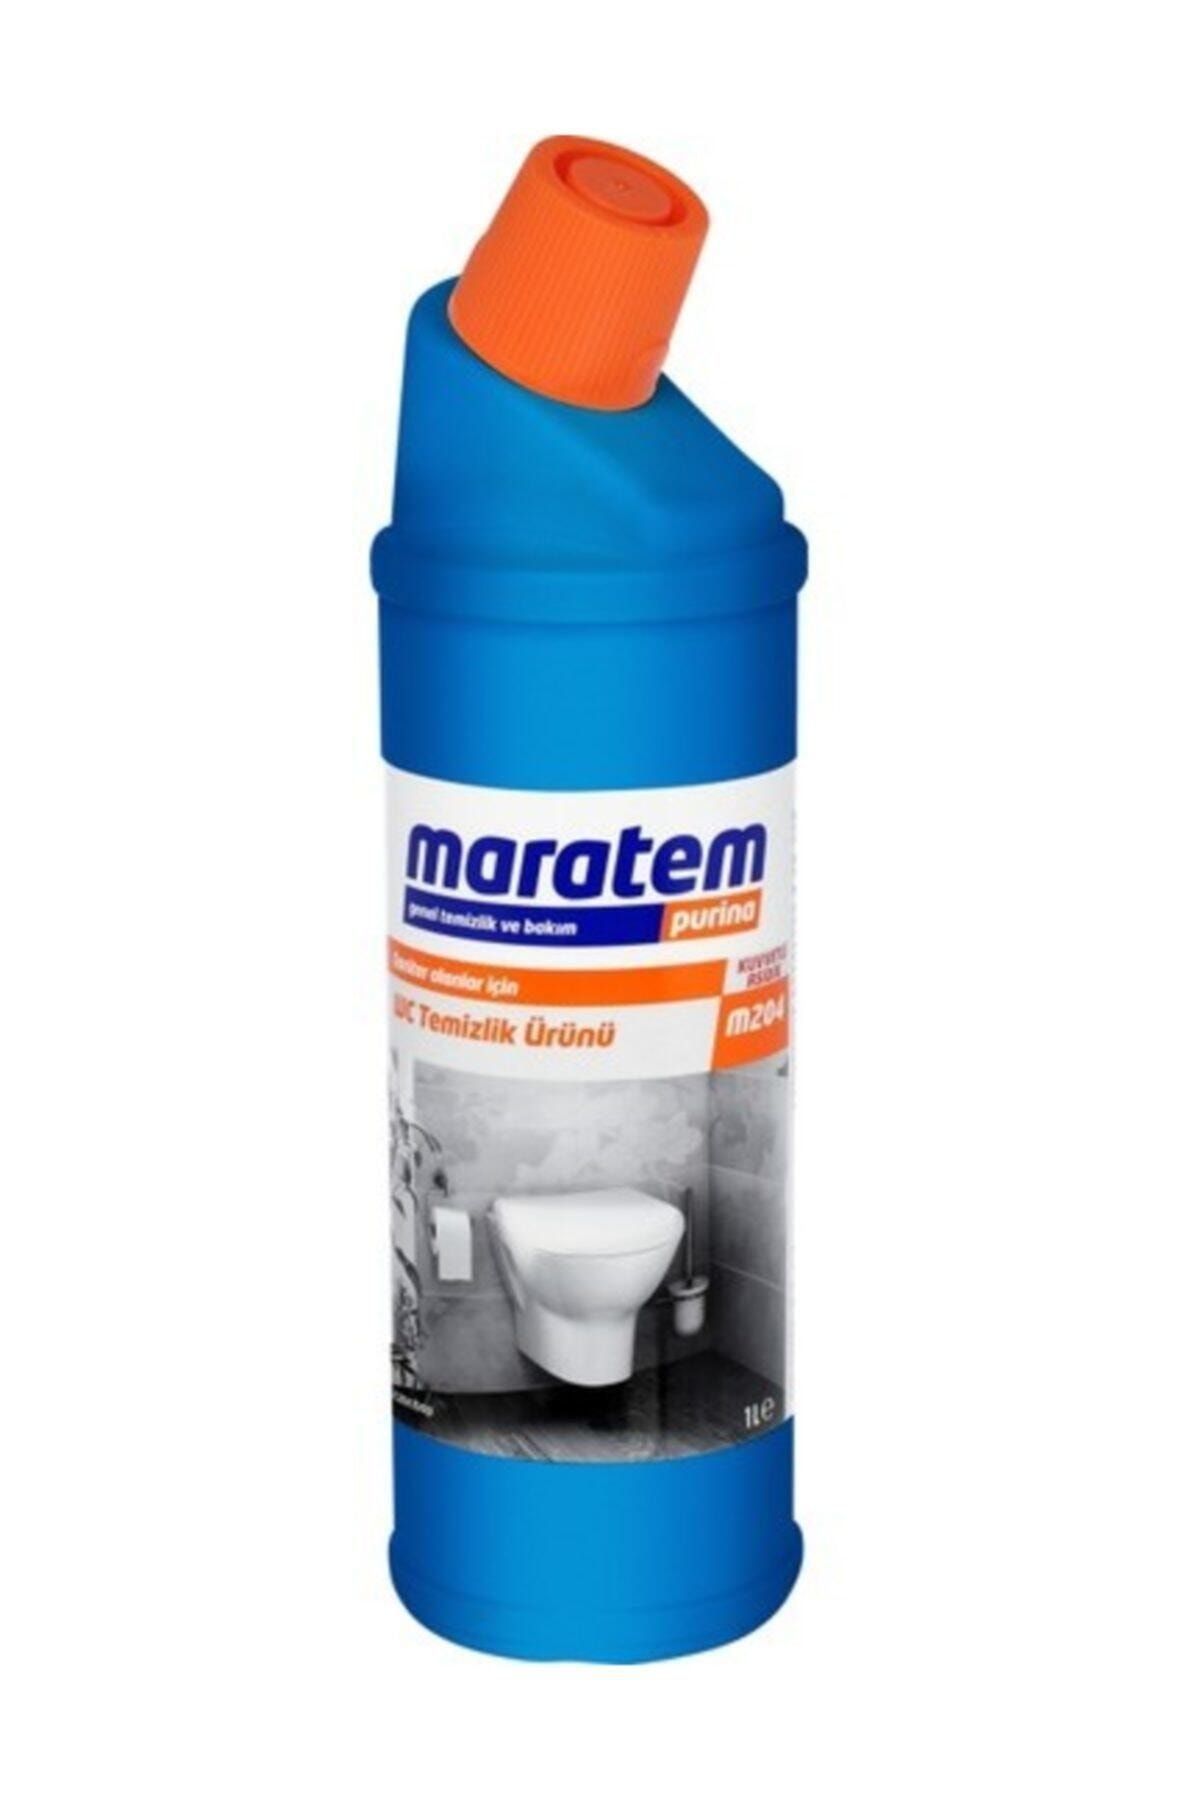 Maratem Maratem Wc Temizlik Ürünü 1 Lt M204 2 Adet